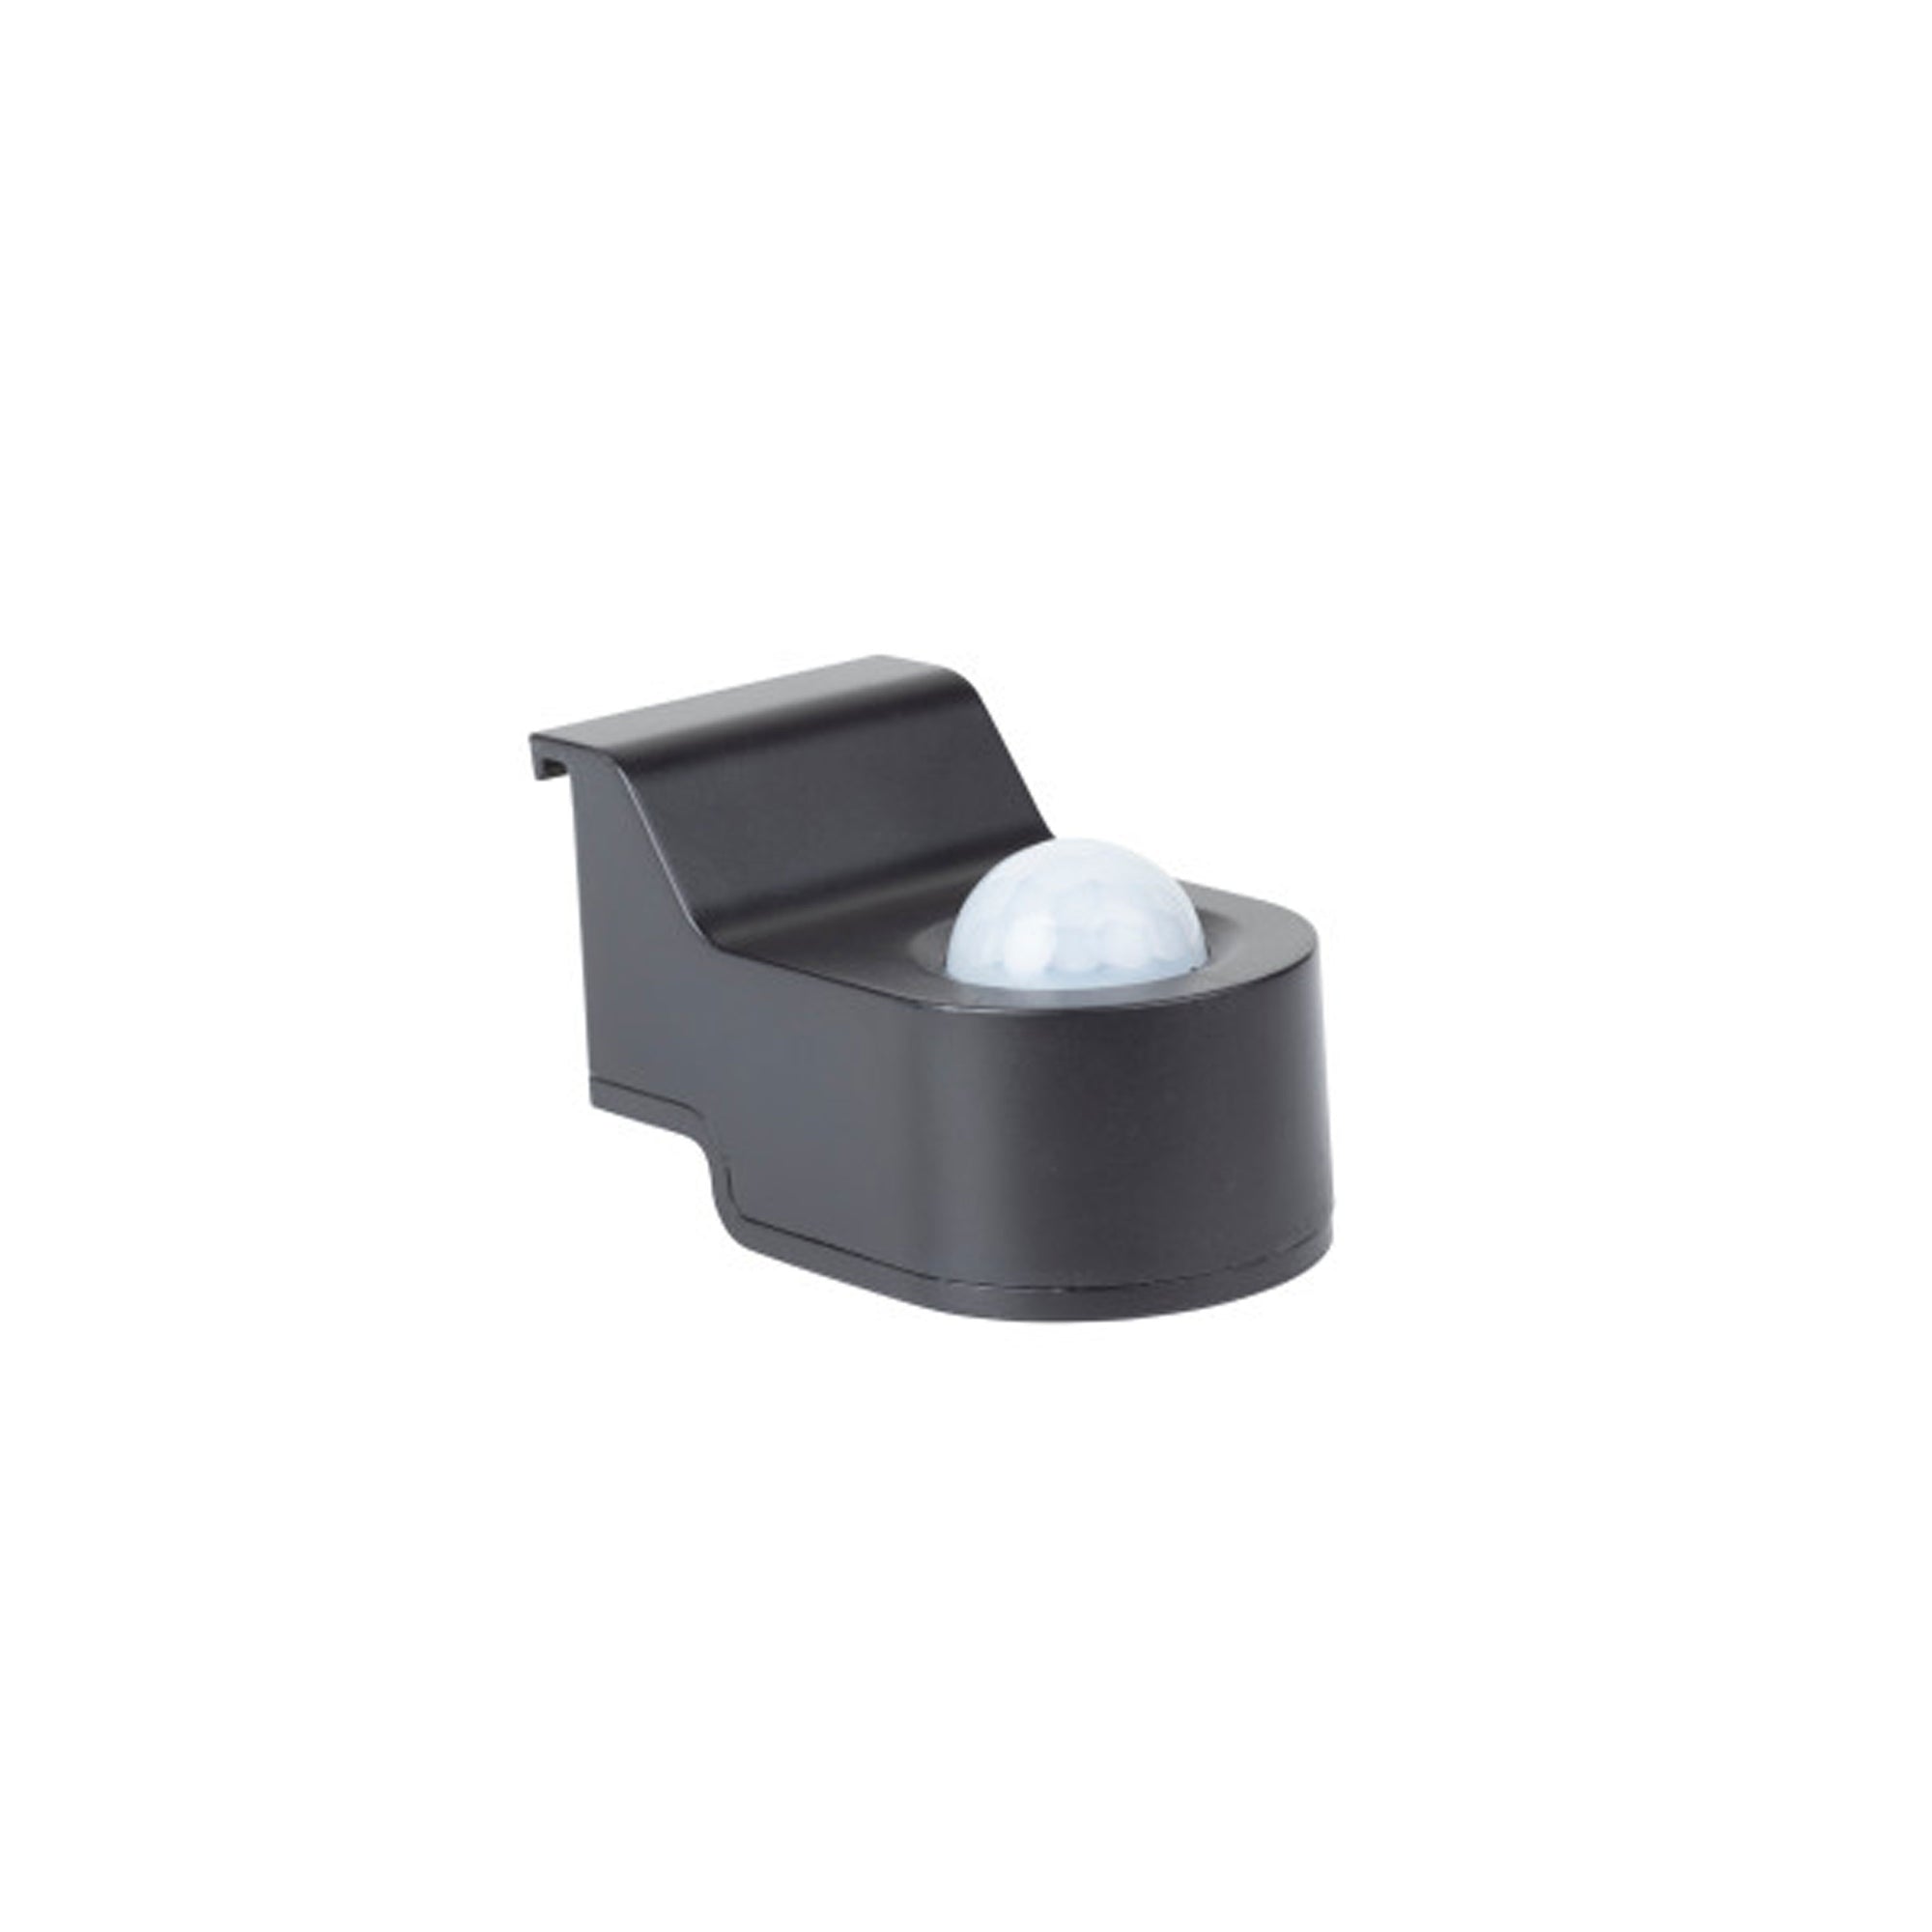 Lippert 715124 Smart Arm Infrared Security Sensor Kit